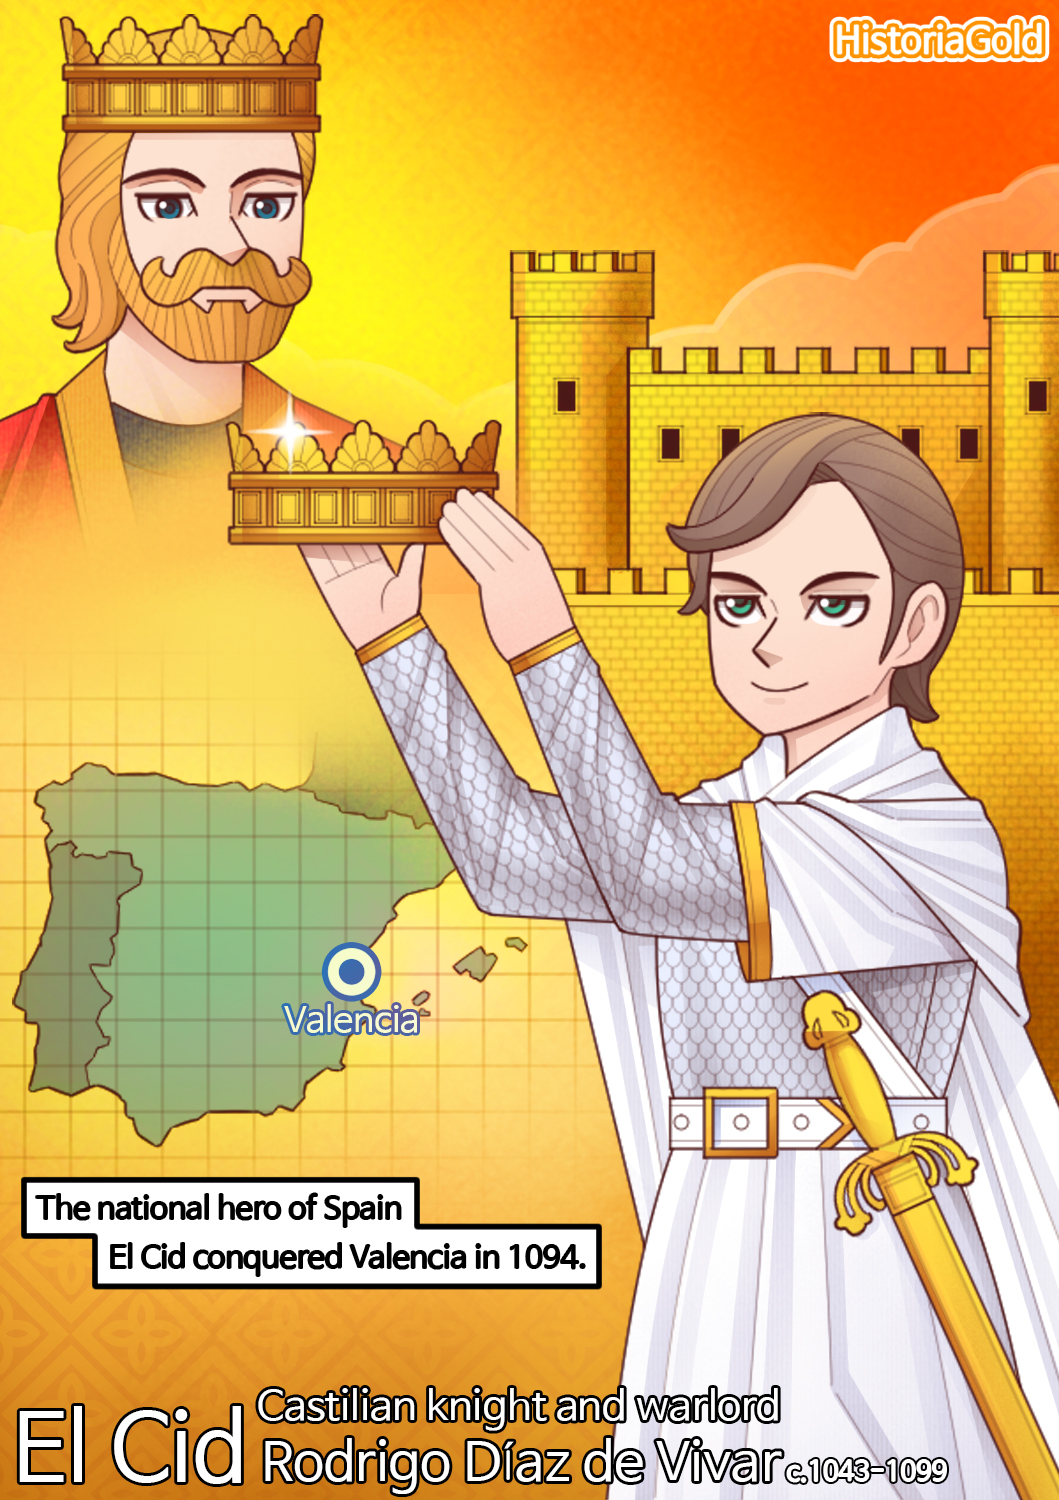 History of Spain] El Cid by HistoriaGold on DeviantArt